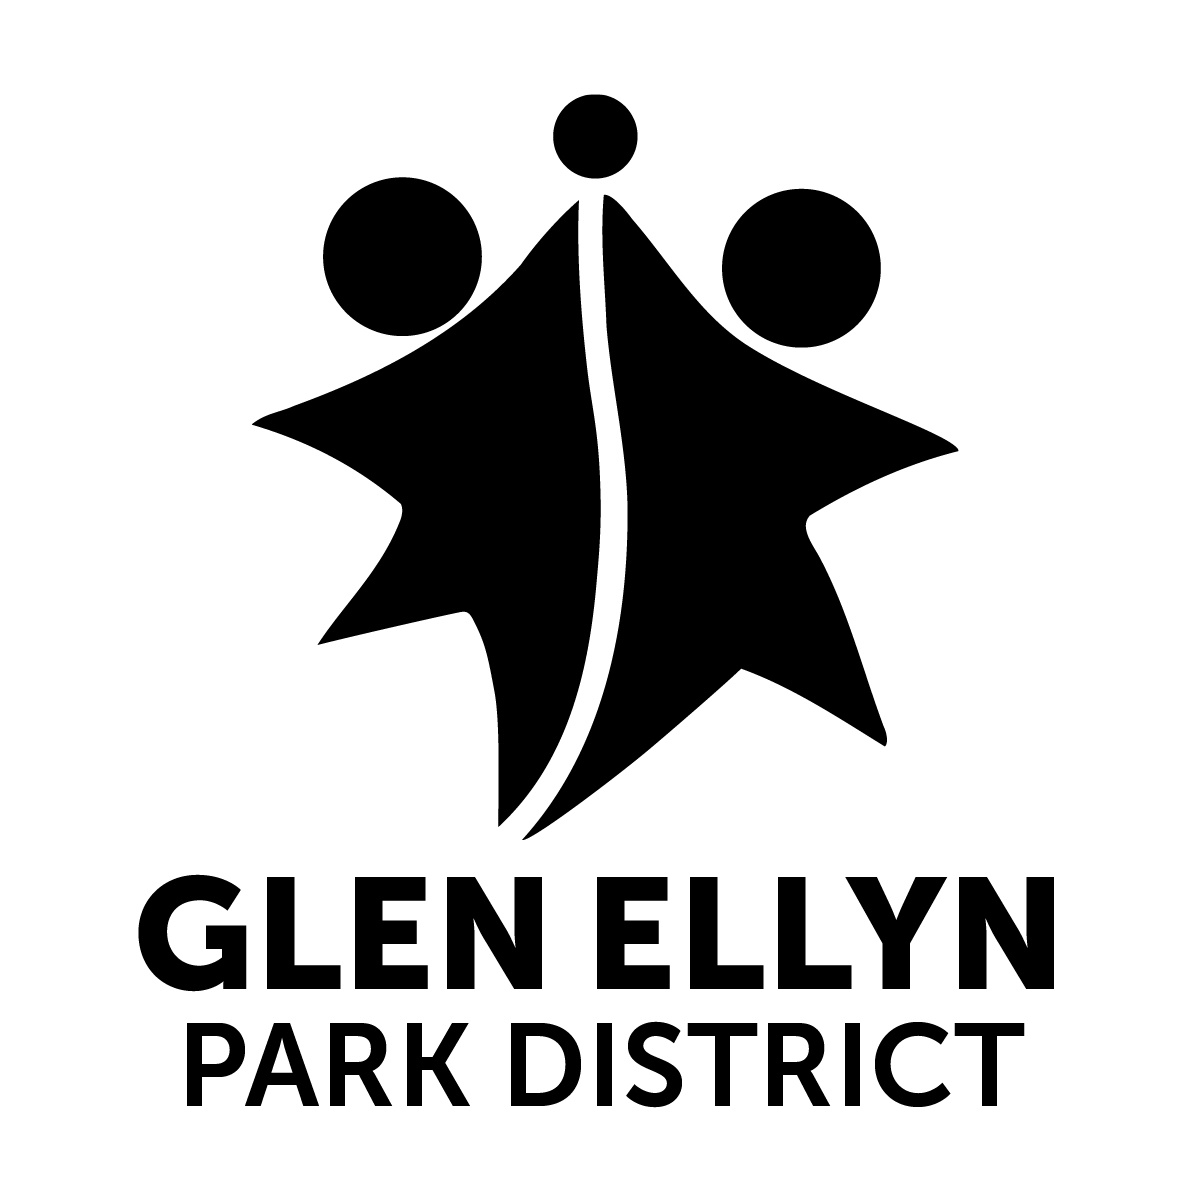 Glen Ellyn Park District 2017